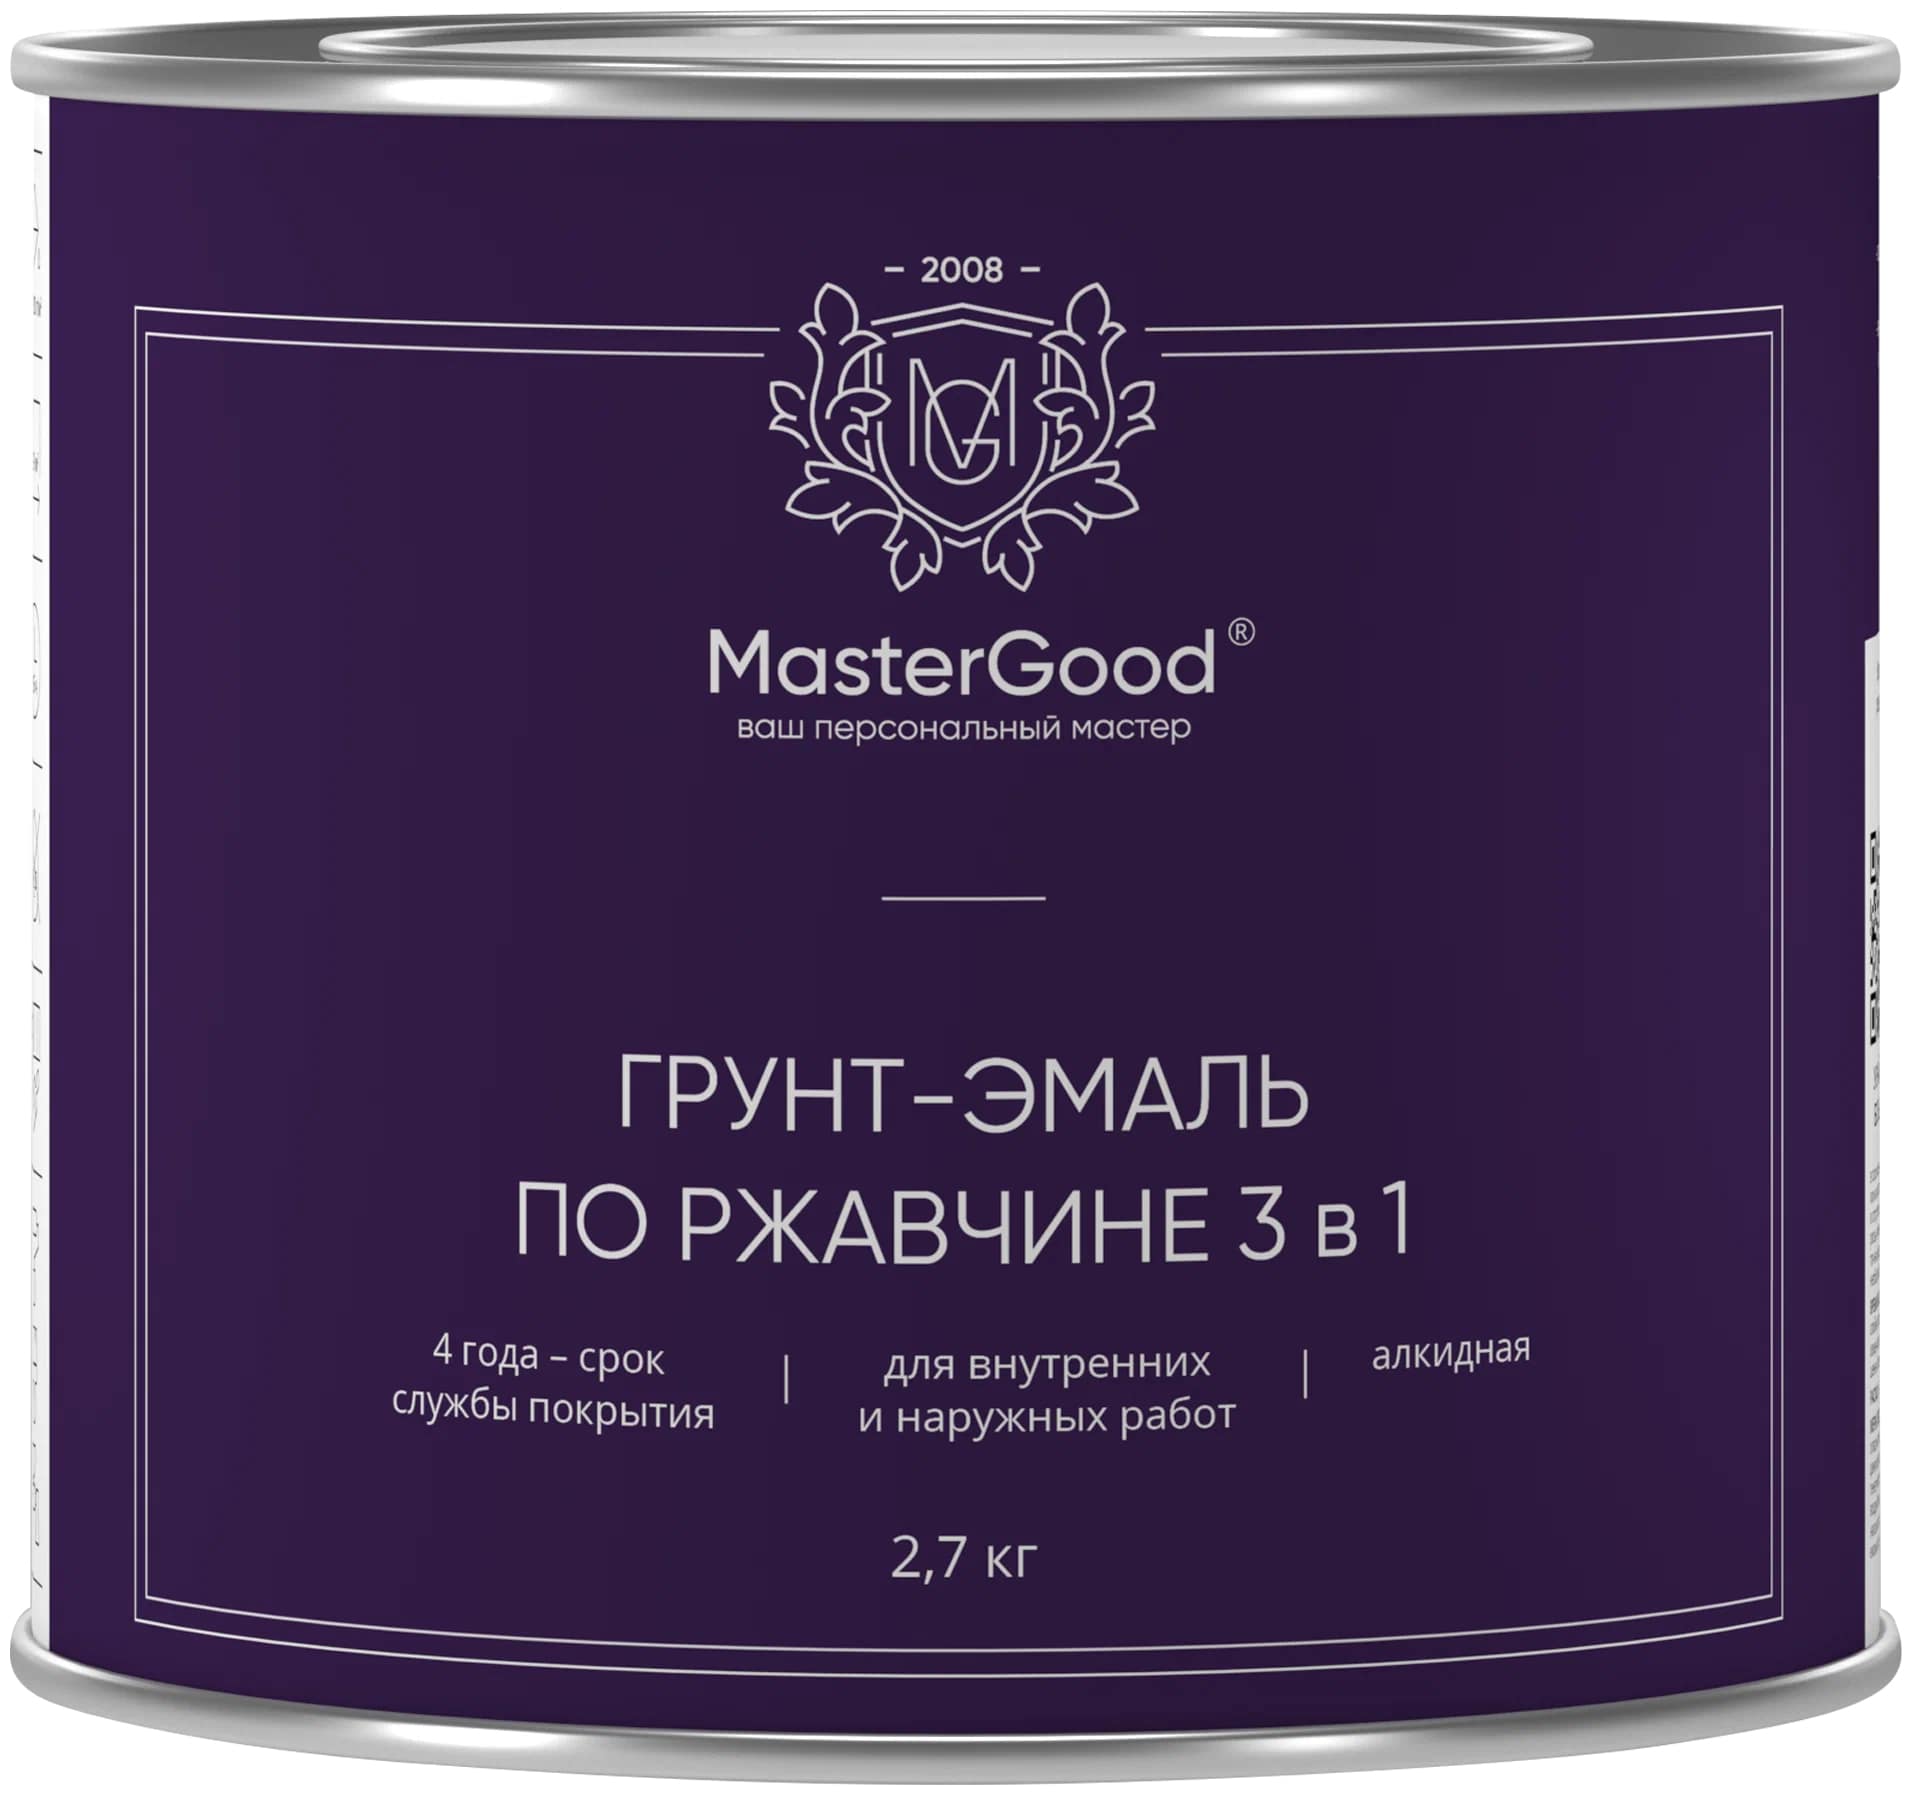 Грунт-эмаль Master Good по ржавчине, 3 в 1, чёрный, 2,7 кг